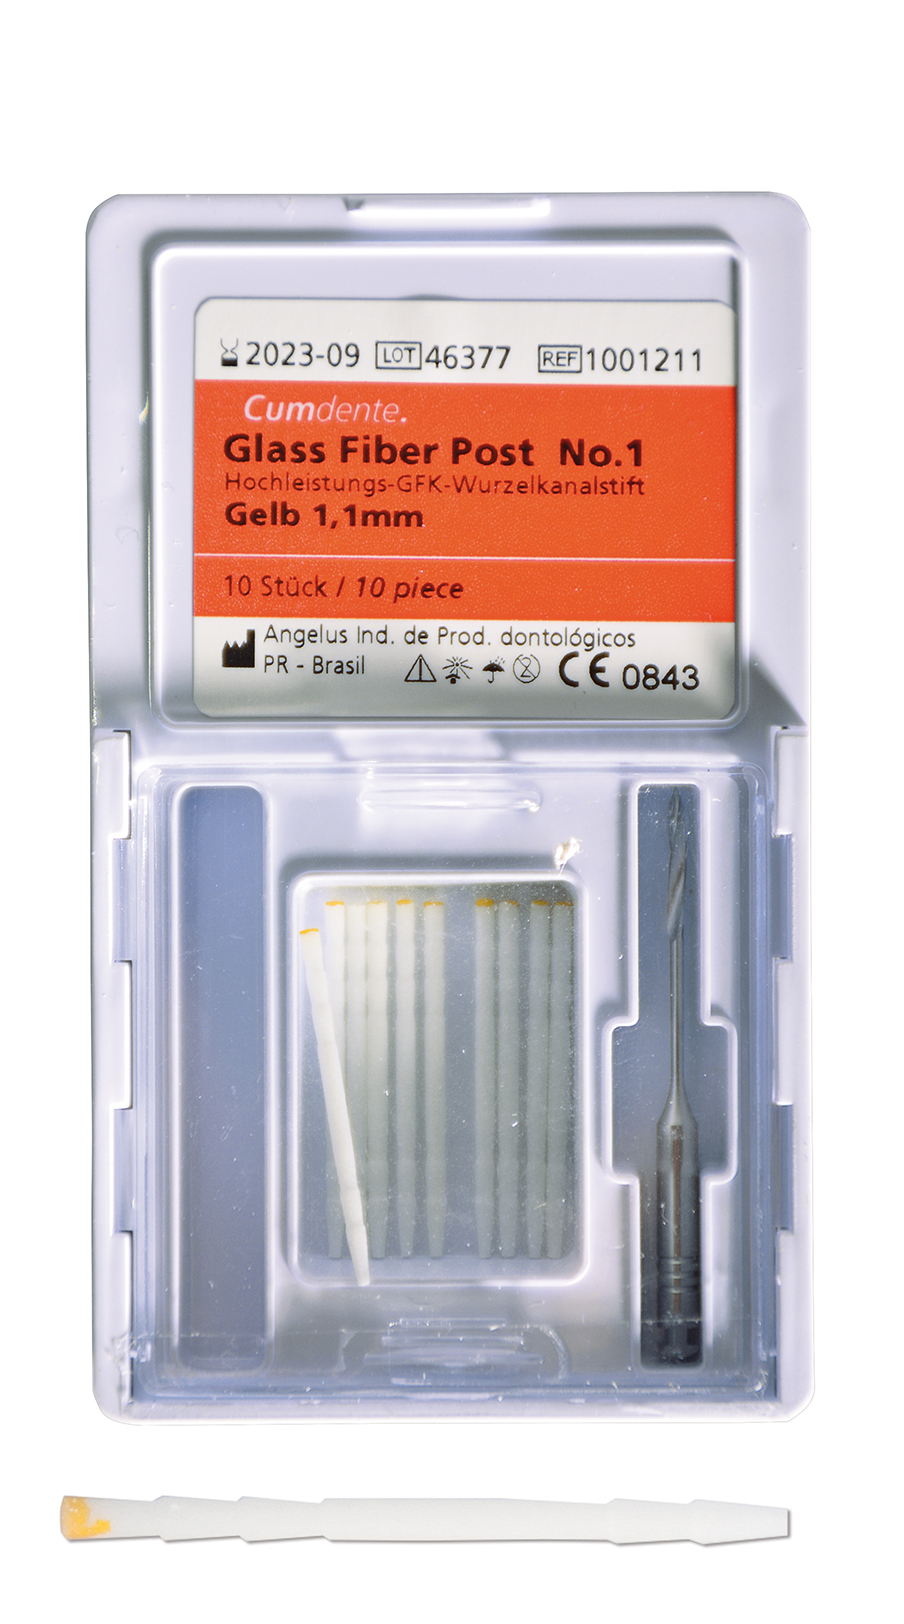 Glass Fiber Post / Größe No. 1 (gelb)